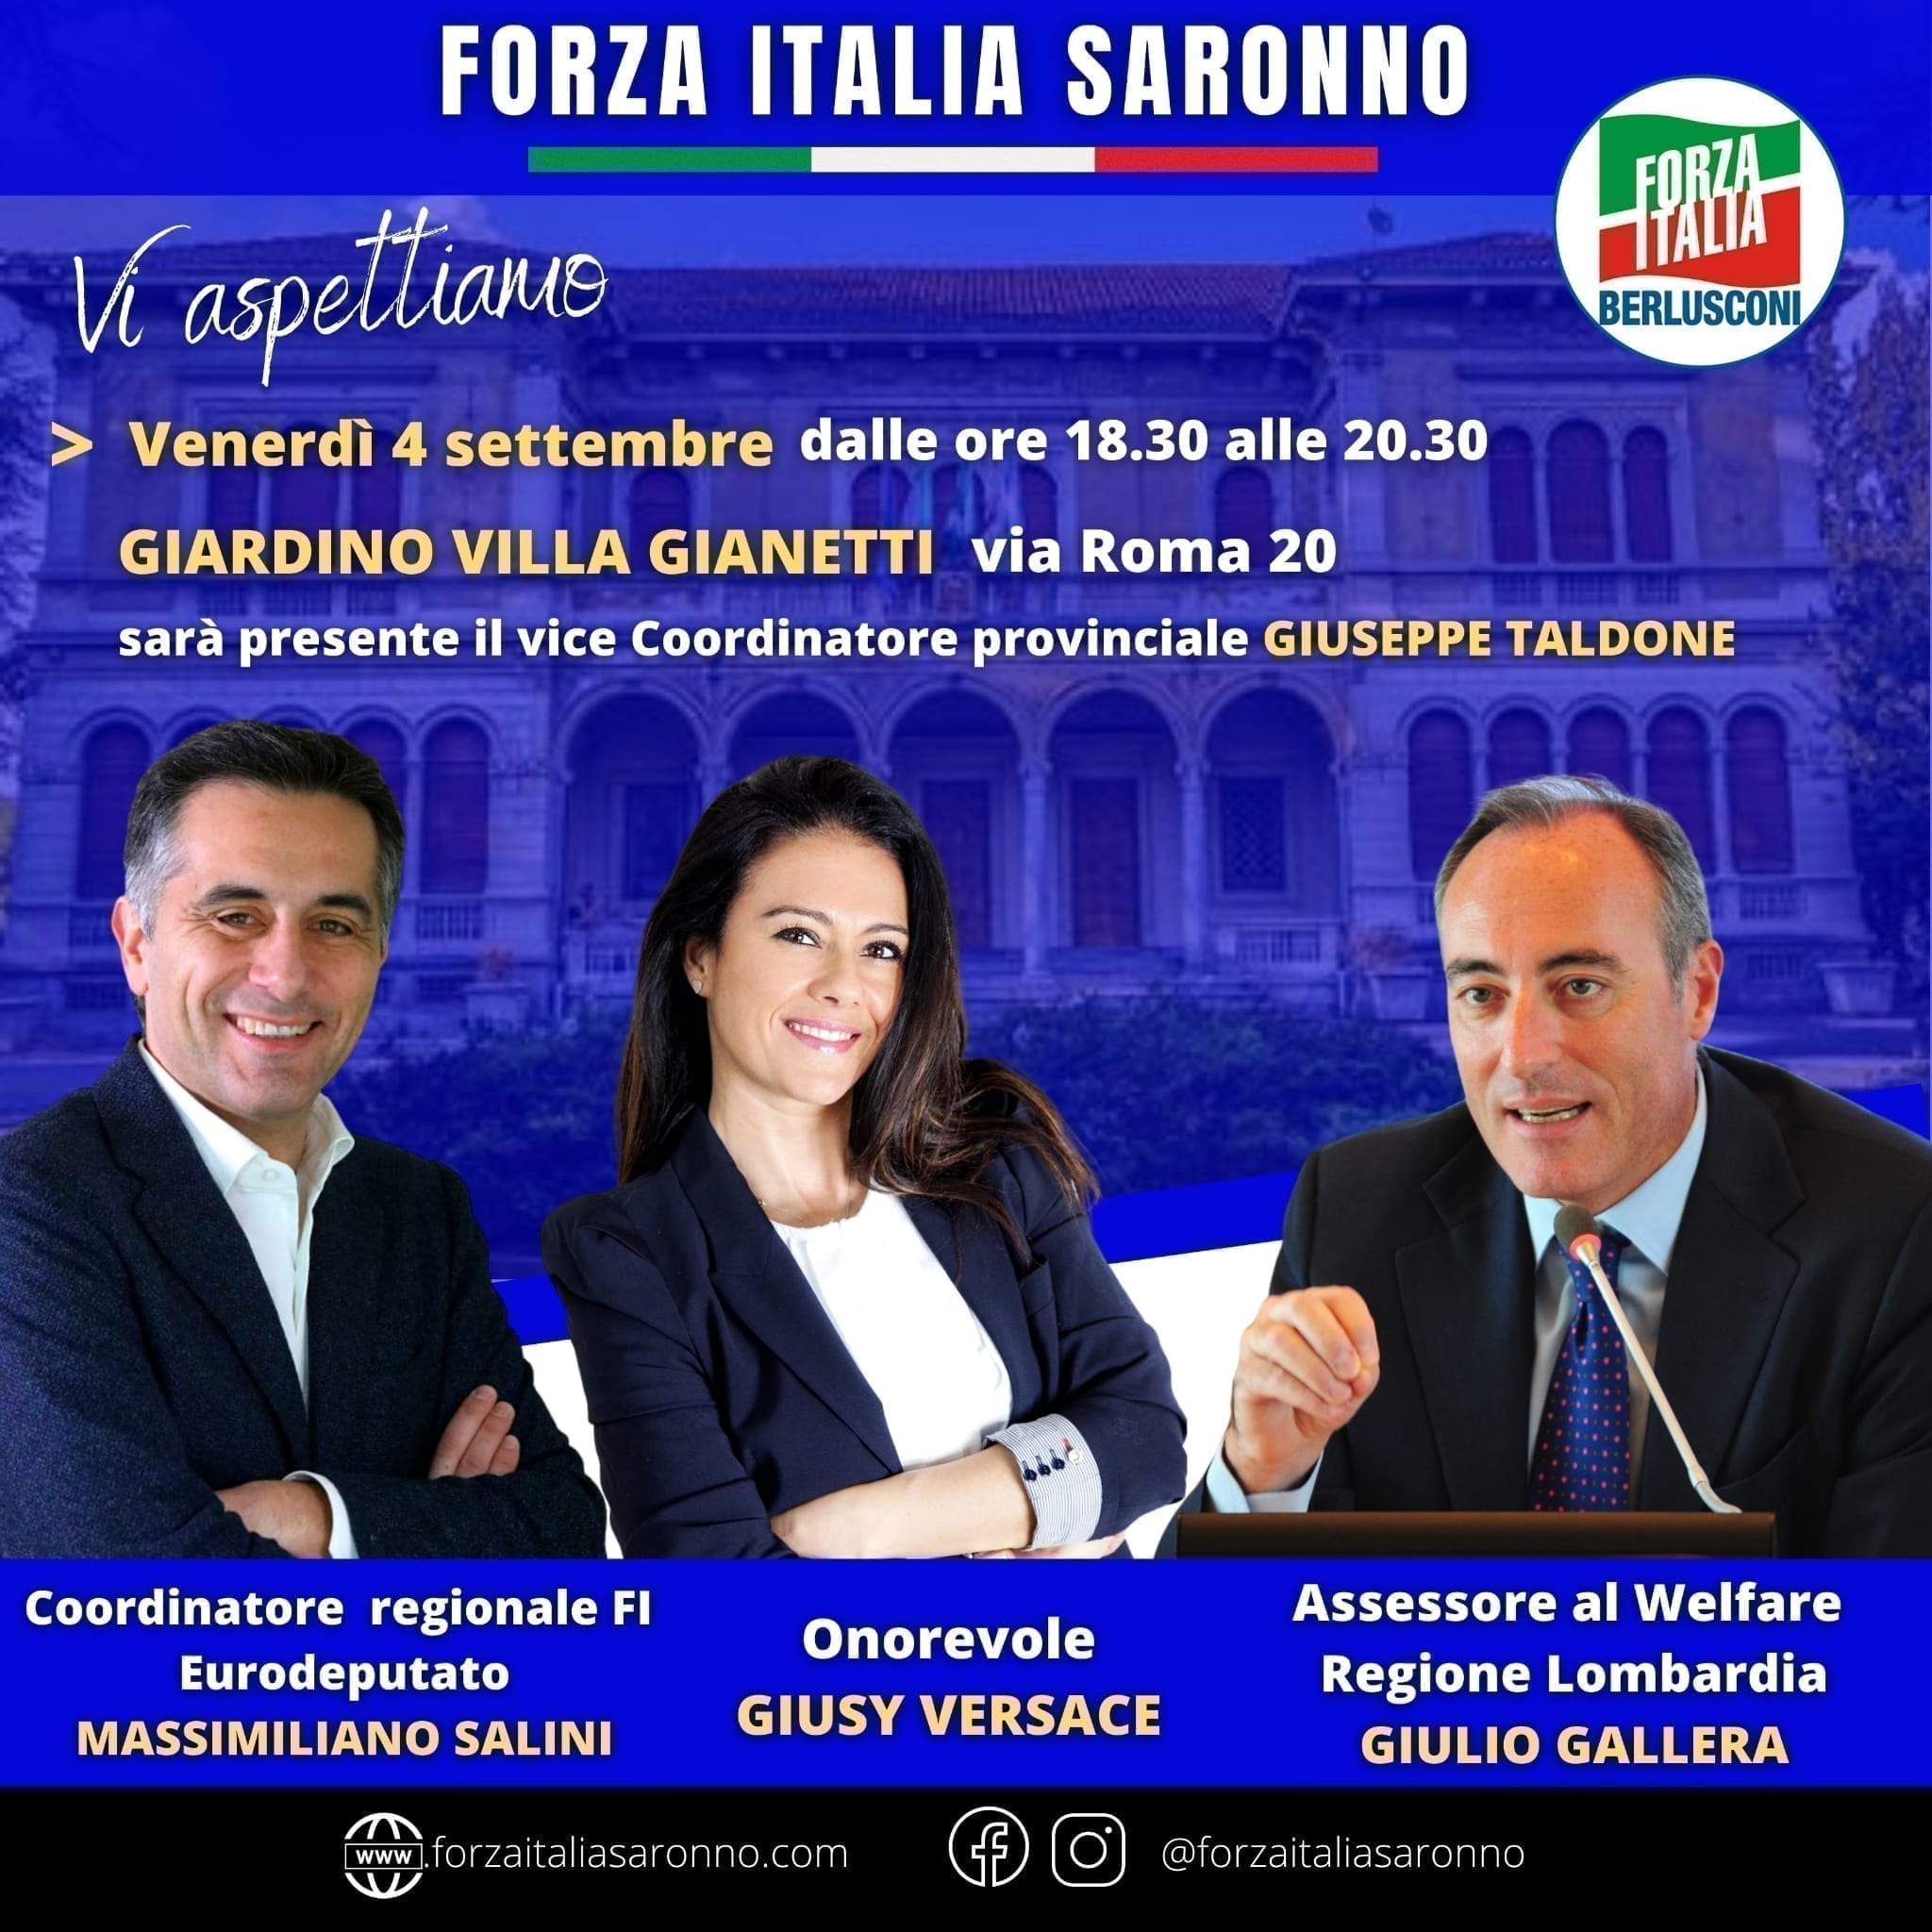 Vip in campo per le elezioni: Gallera, Giusy Versace e Salini in Villa Gianetti con Forza Italia